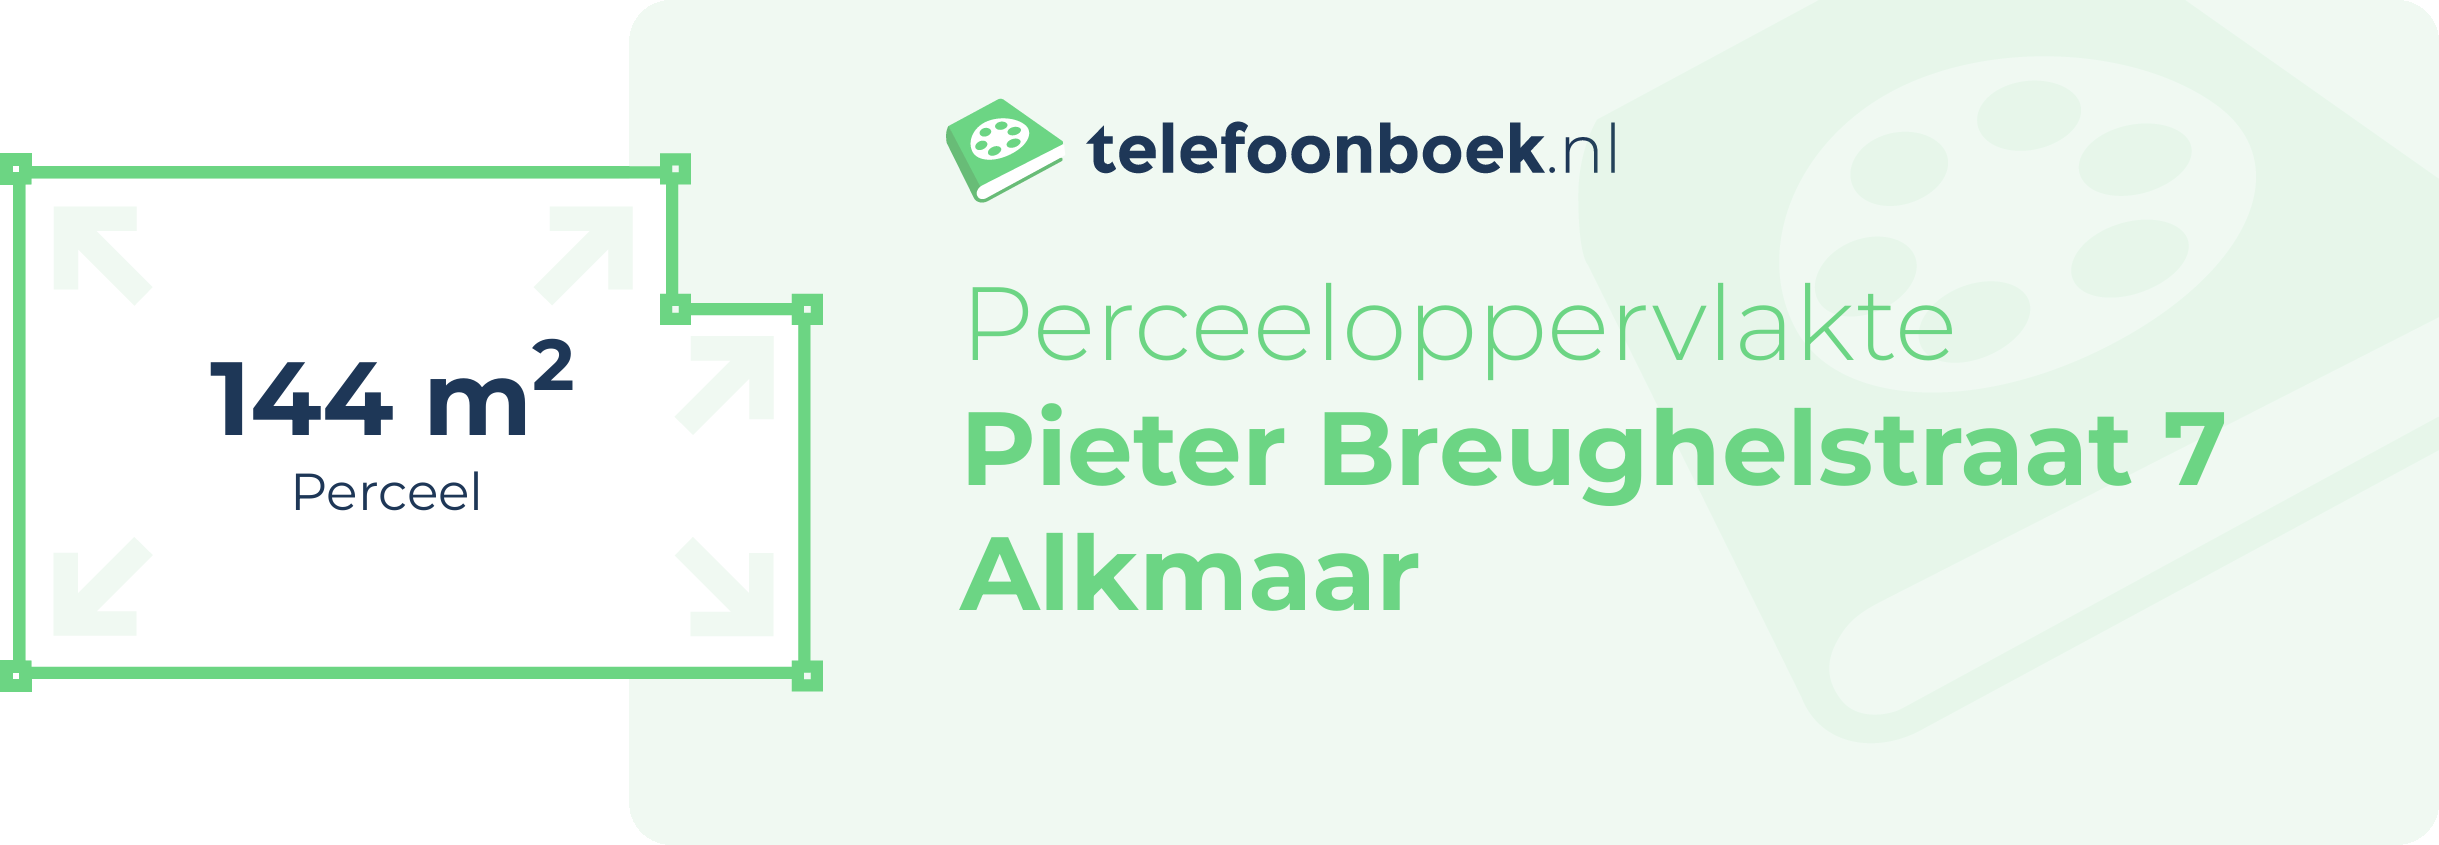 Perceeloppervlakte Pieter Breughelstraat 7 Alkmaar